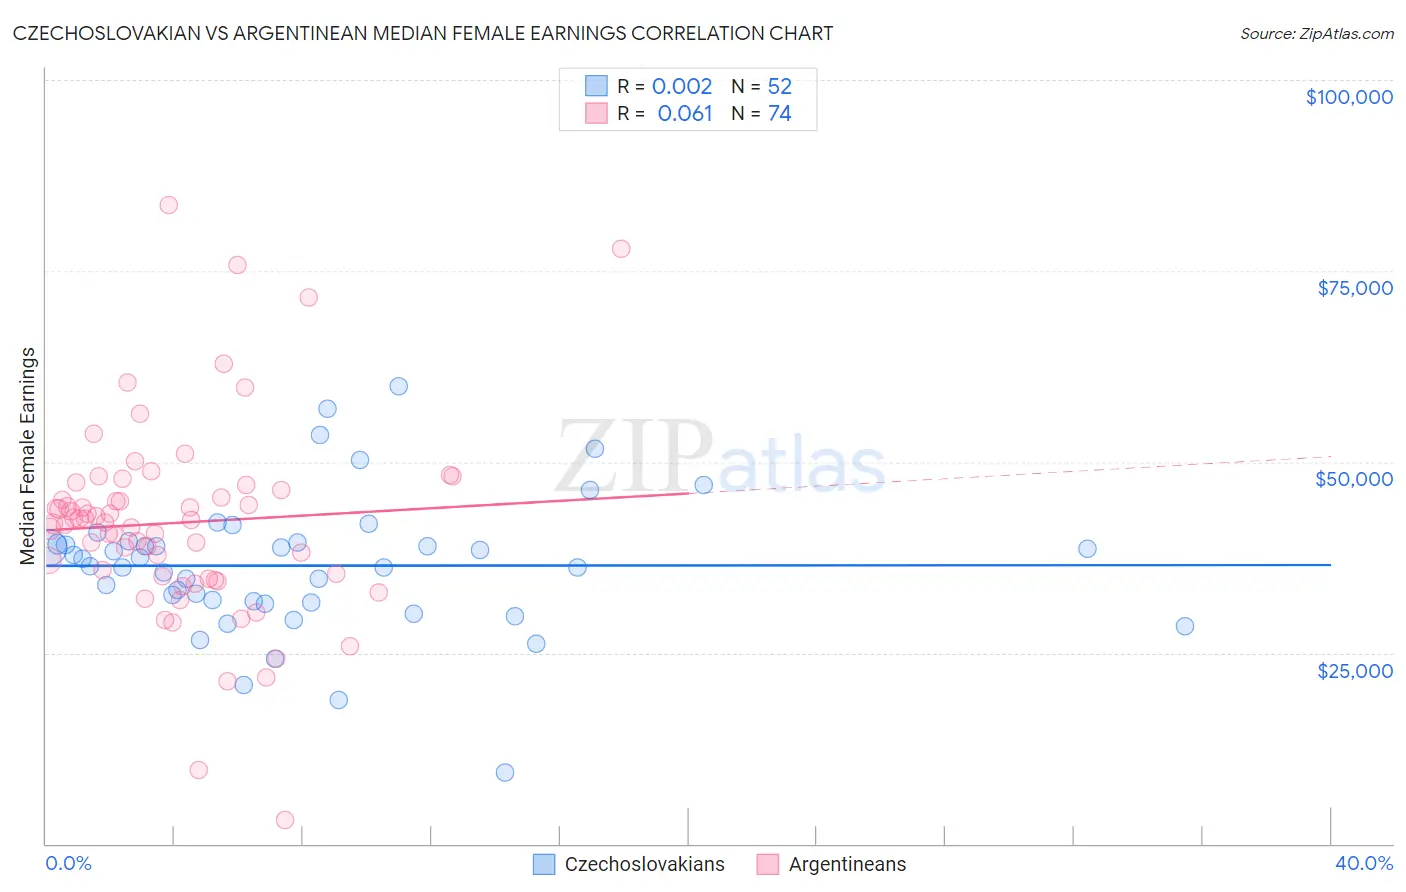 Czechoslovakian vs Argentinean Median Female Earnings